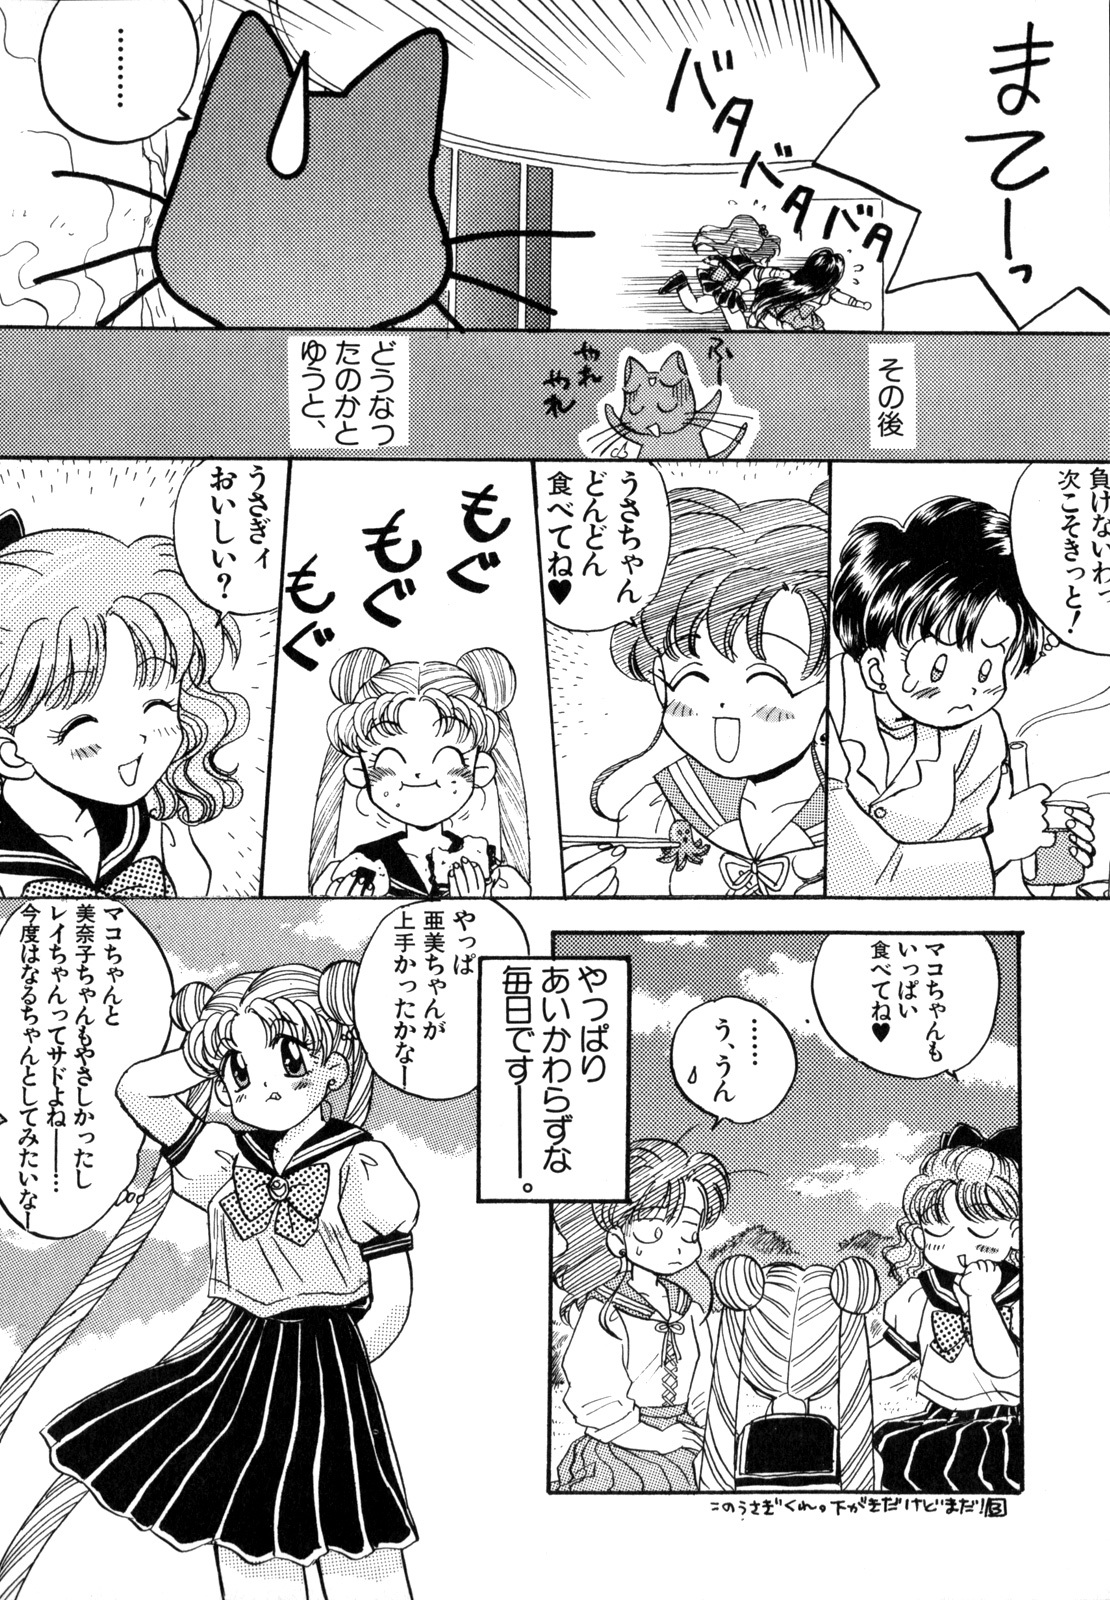 [Anthology] Lunatic Party 4 (Bishoujo Senshi Sailor Moon) page 47 full